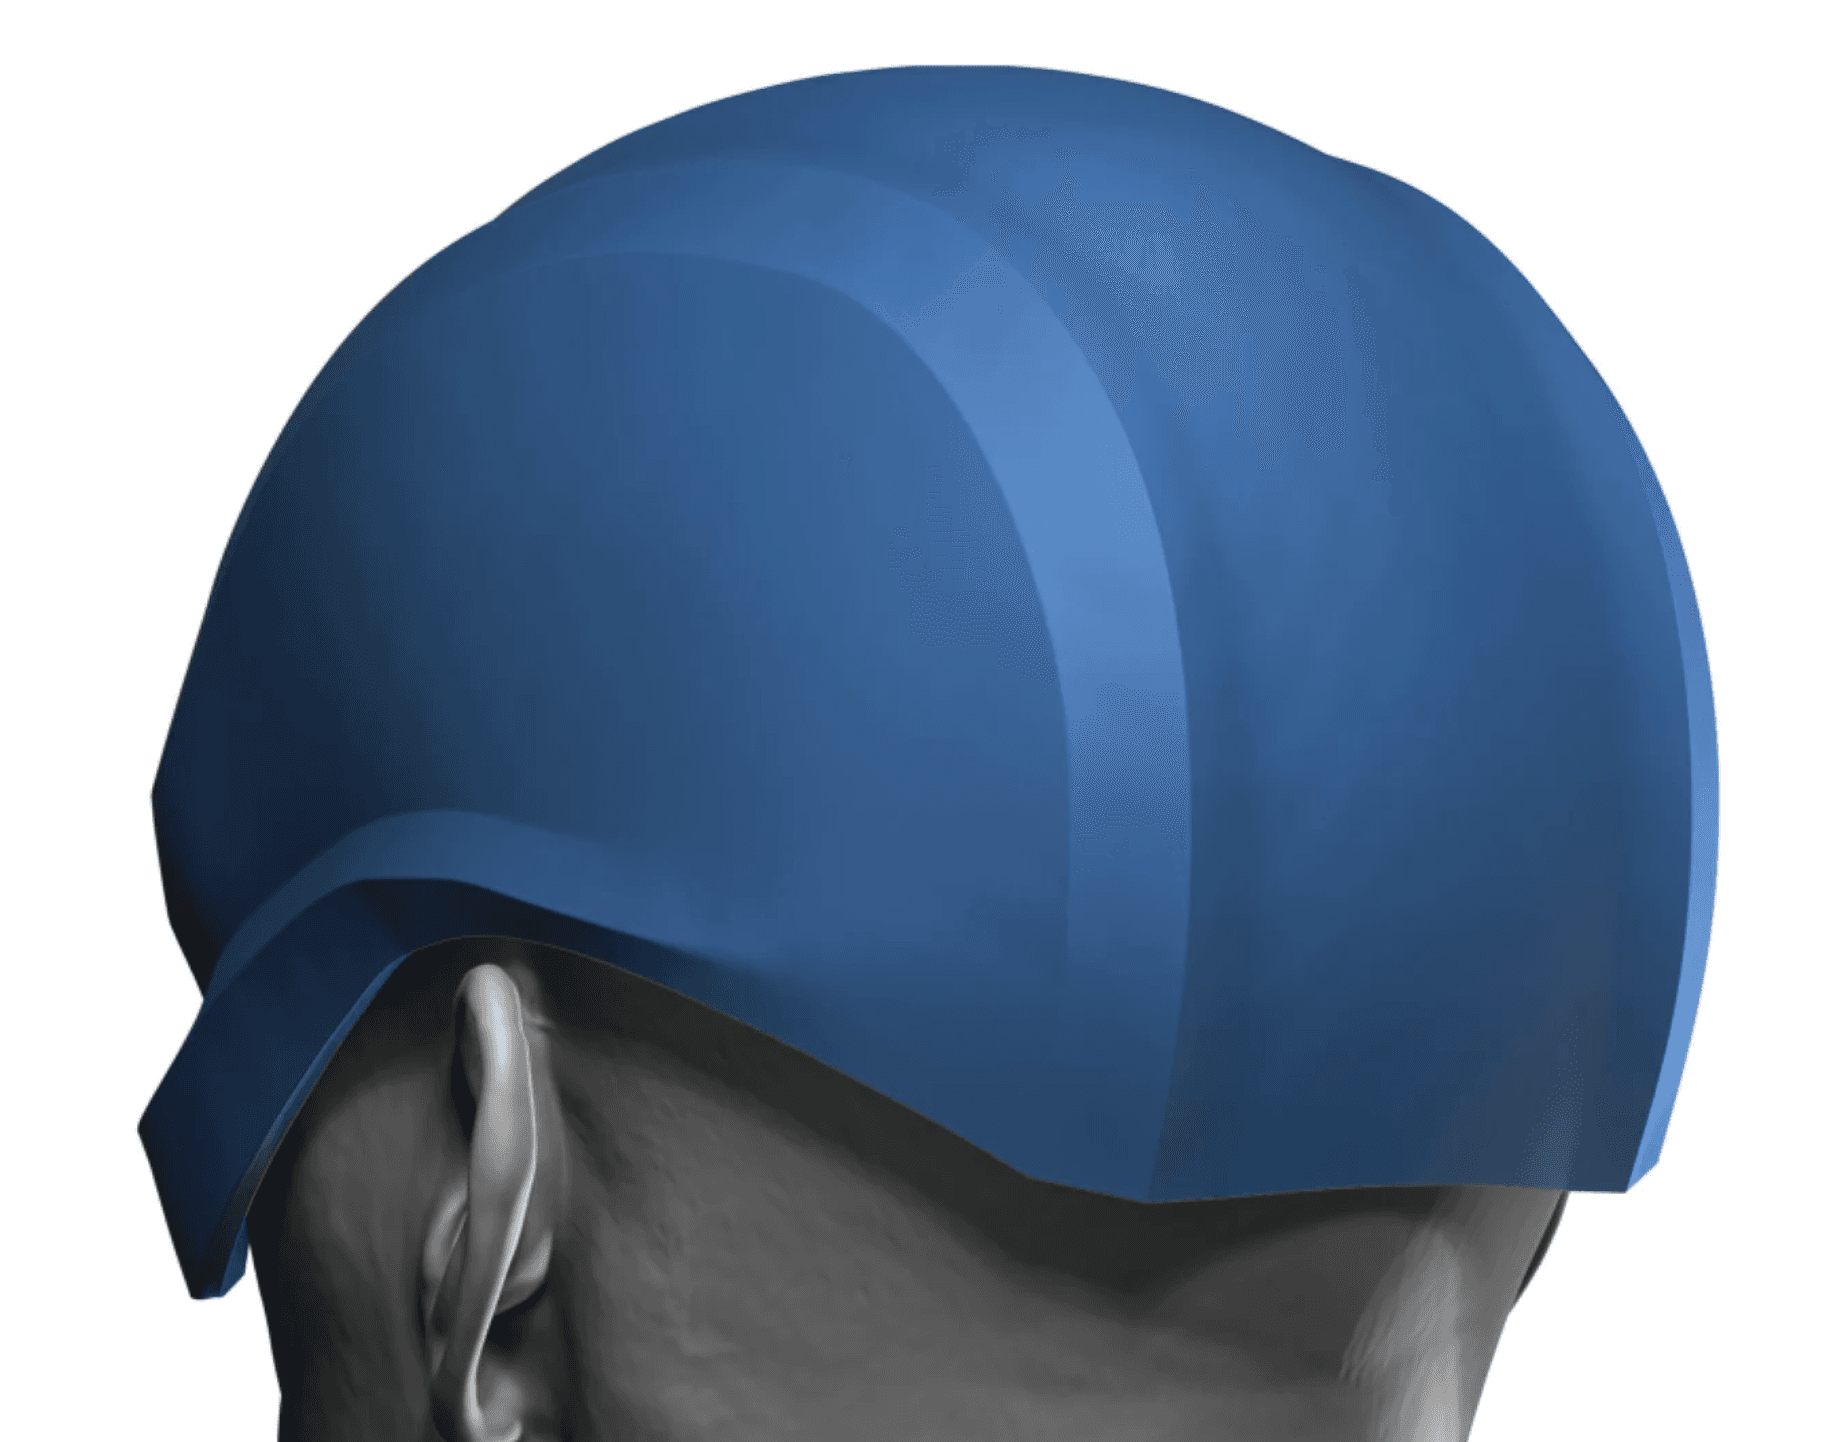 Standard Super Hero Helmet 3d model